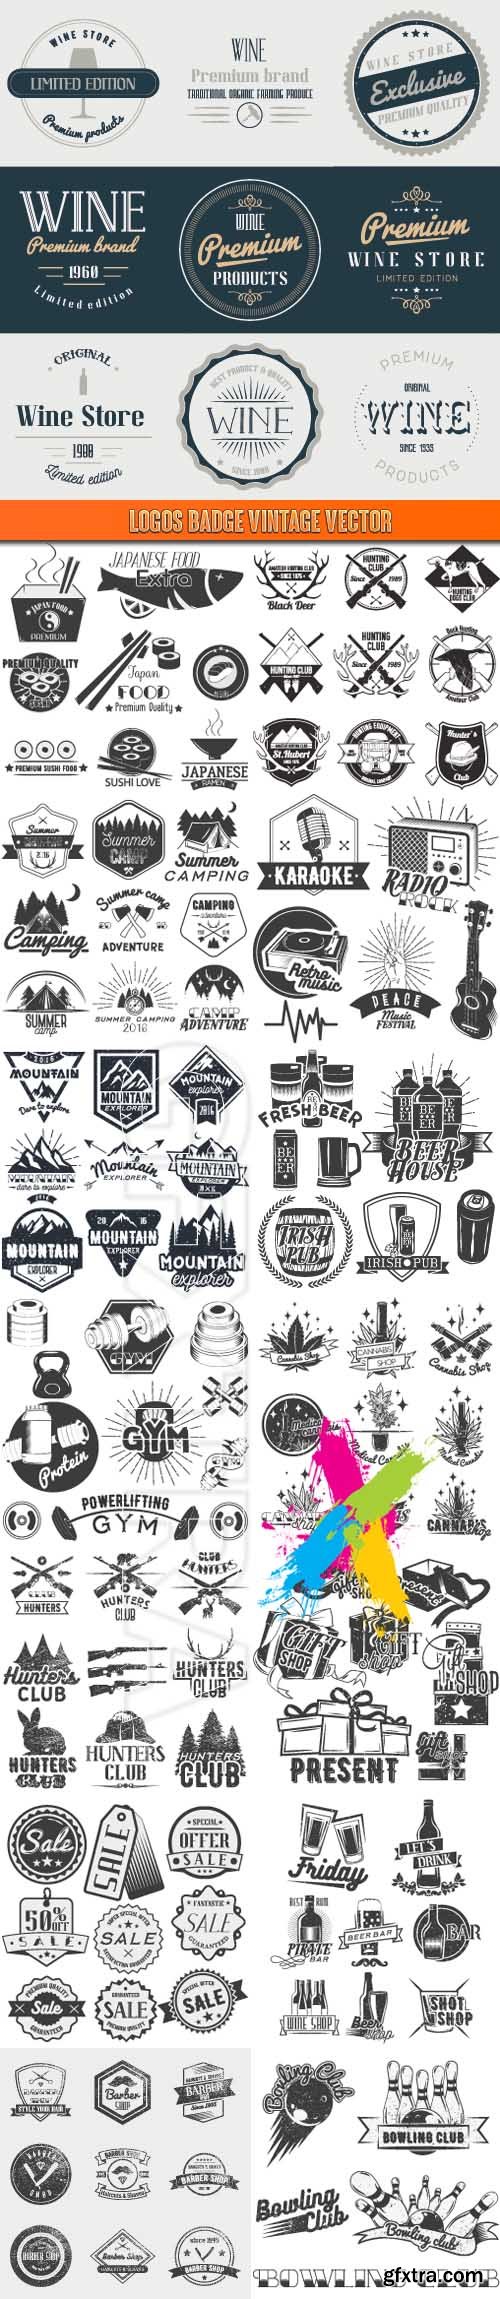 Logos badge vintage vector